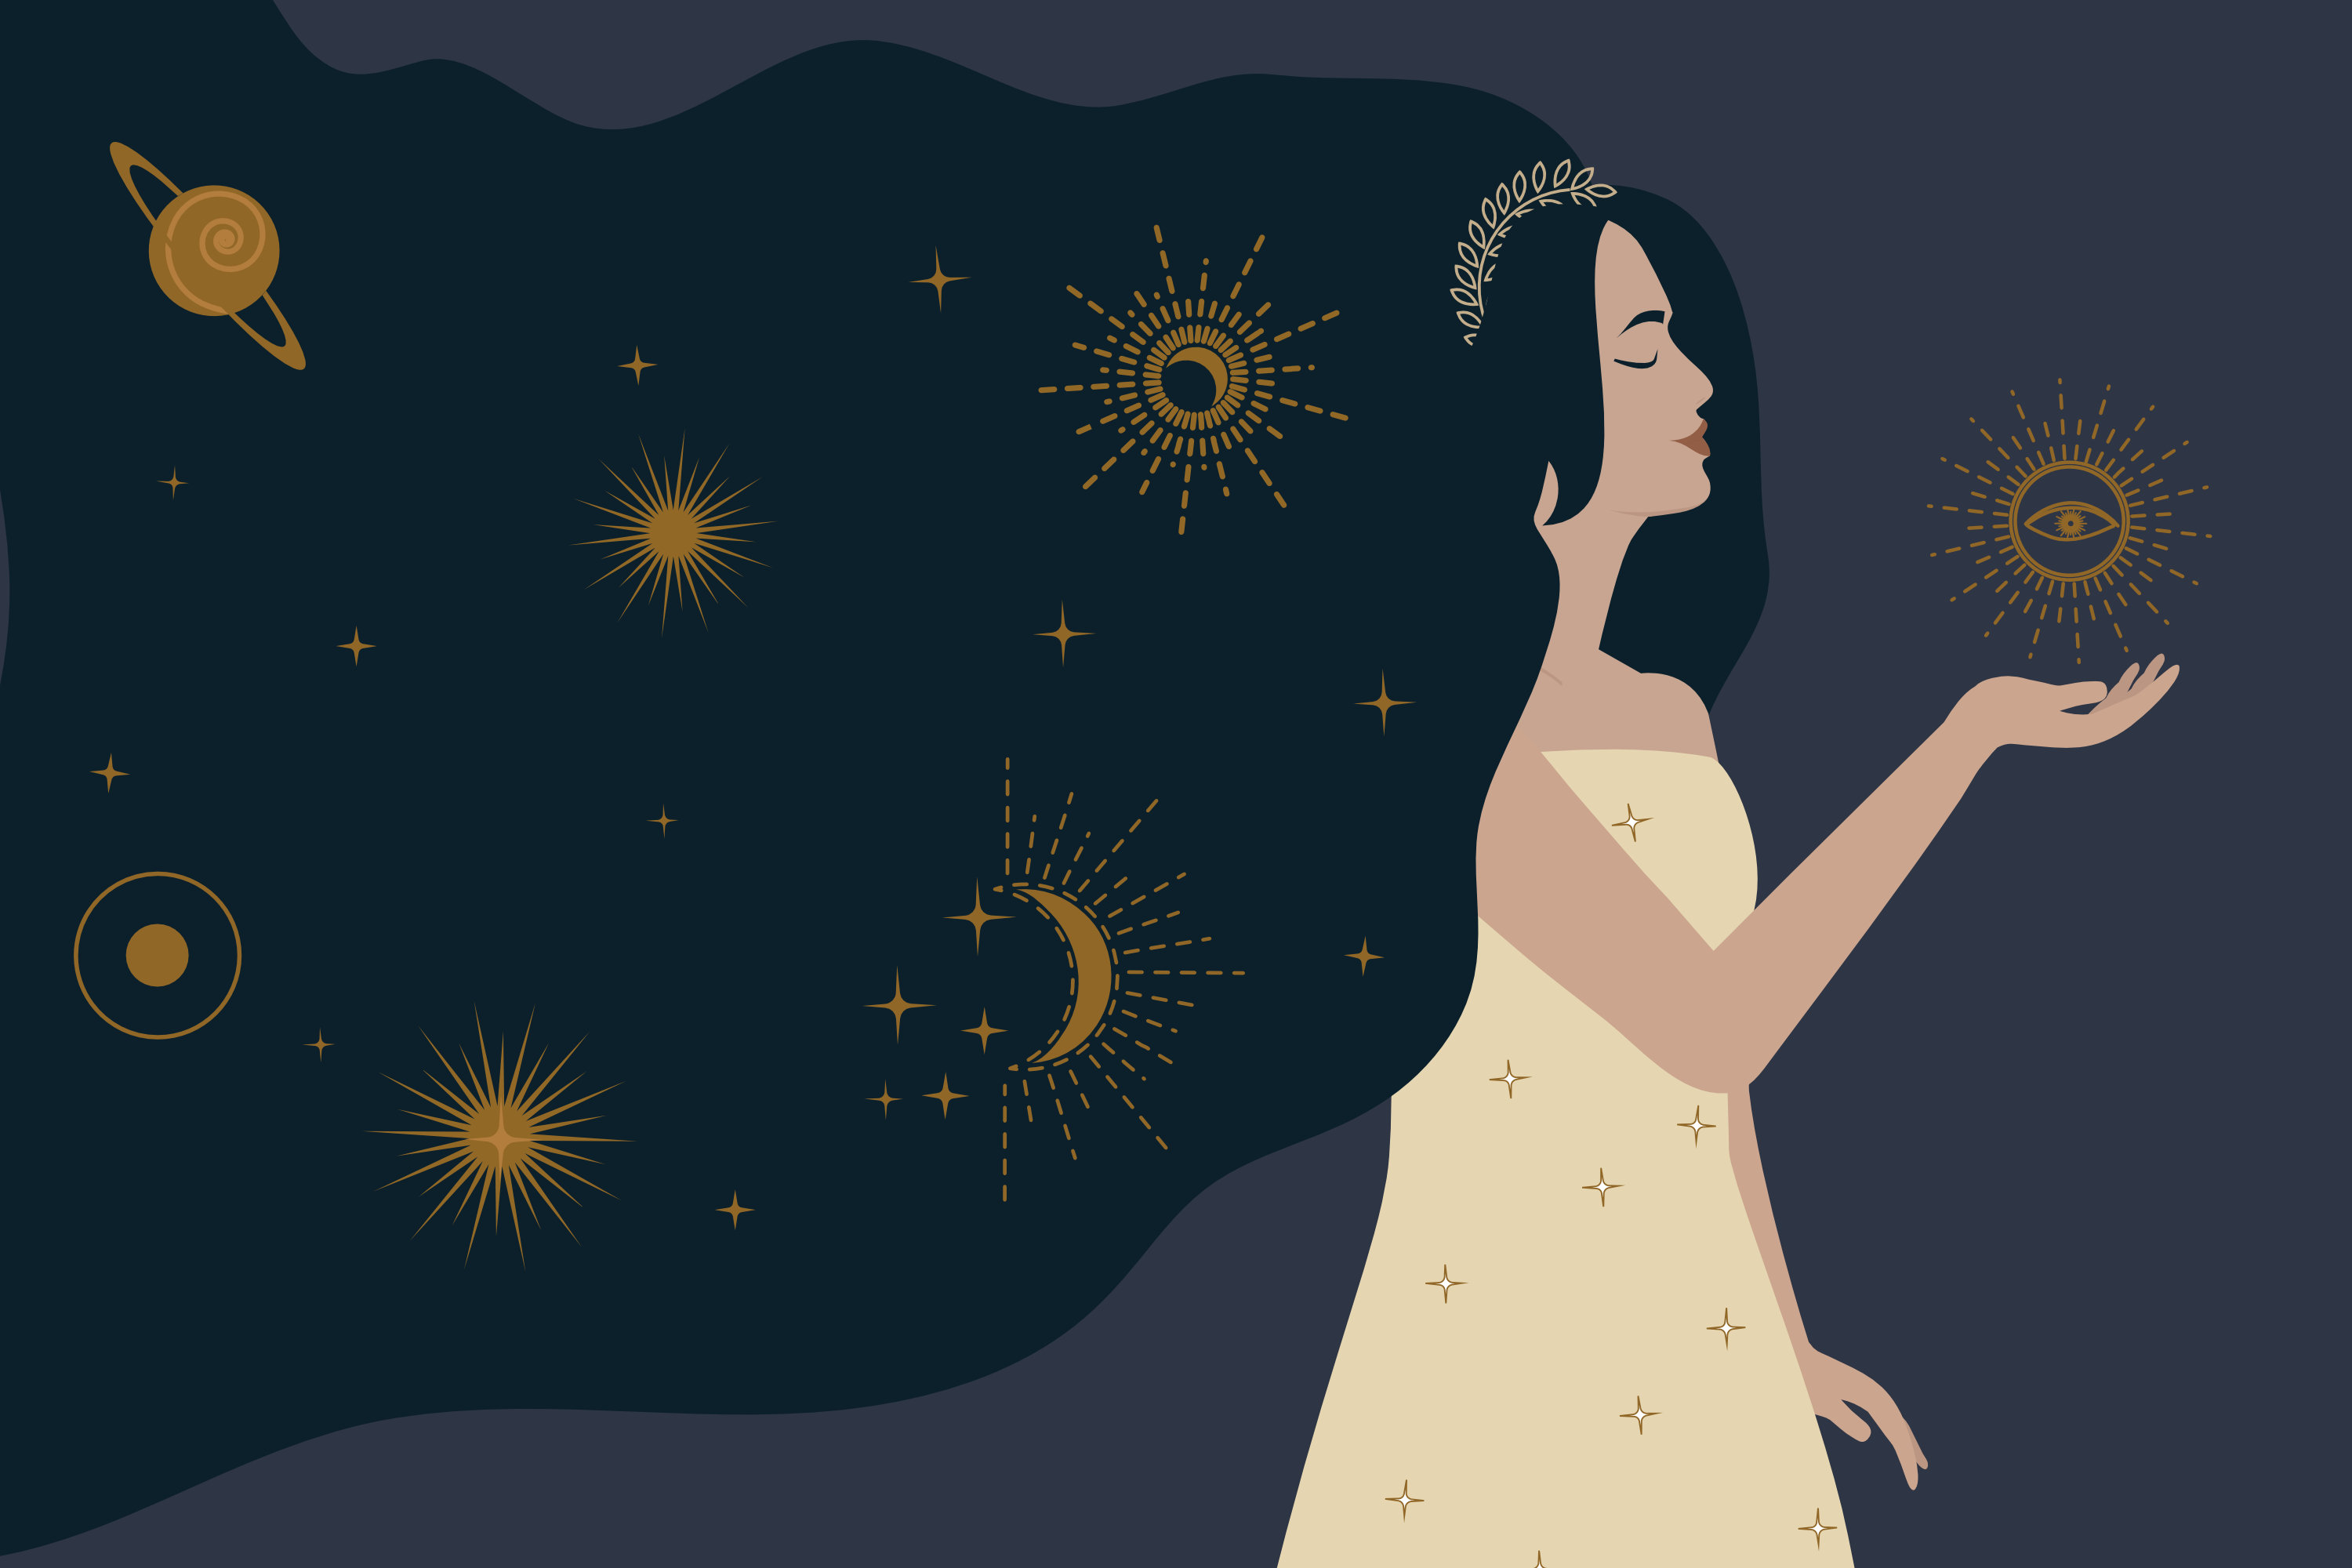 Eevan vuosihoroskooppi 2022: Mitä horoskooppi lupaa sinulle? | Eeva